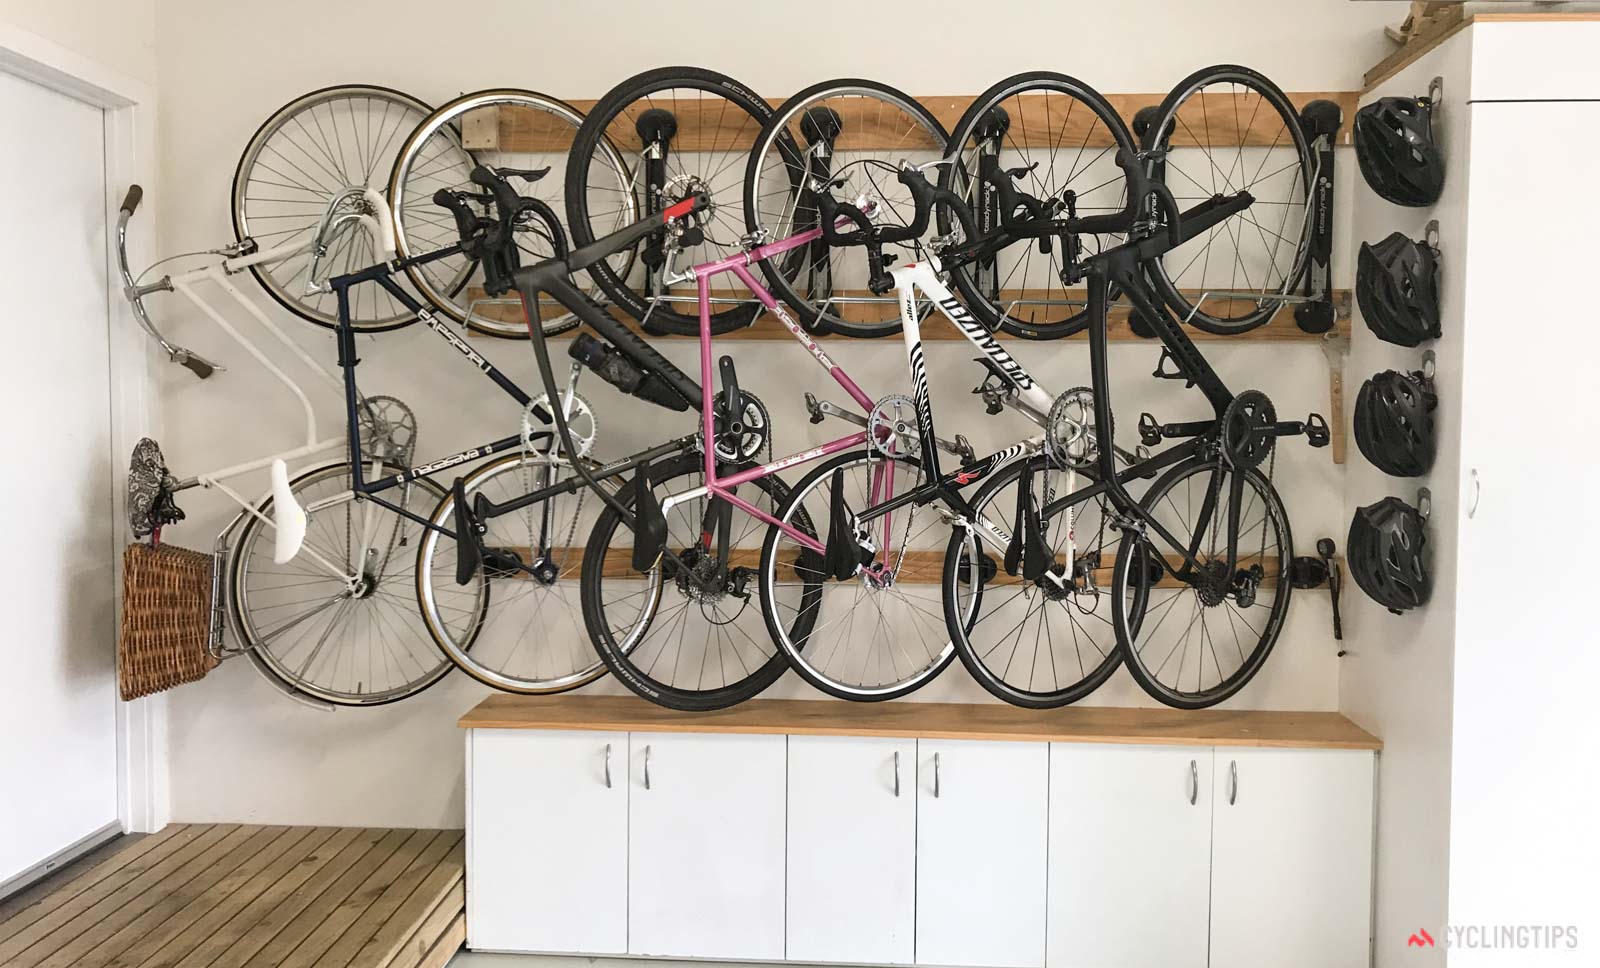 Шкаф для хранения велосипеда в общем коридоре